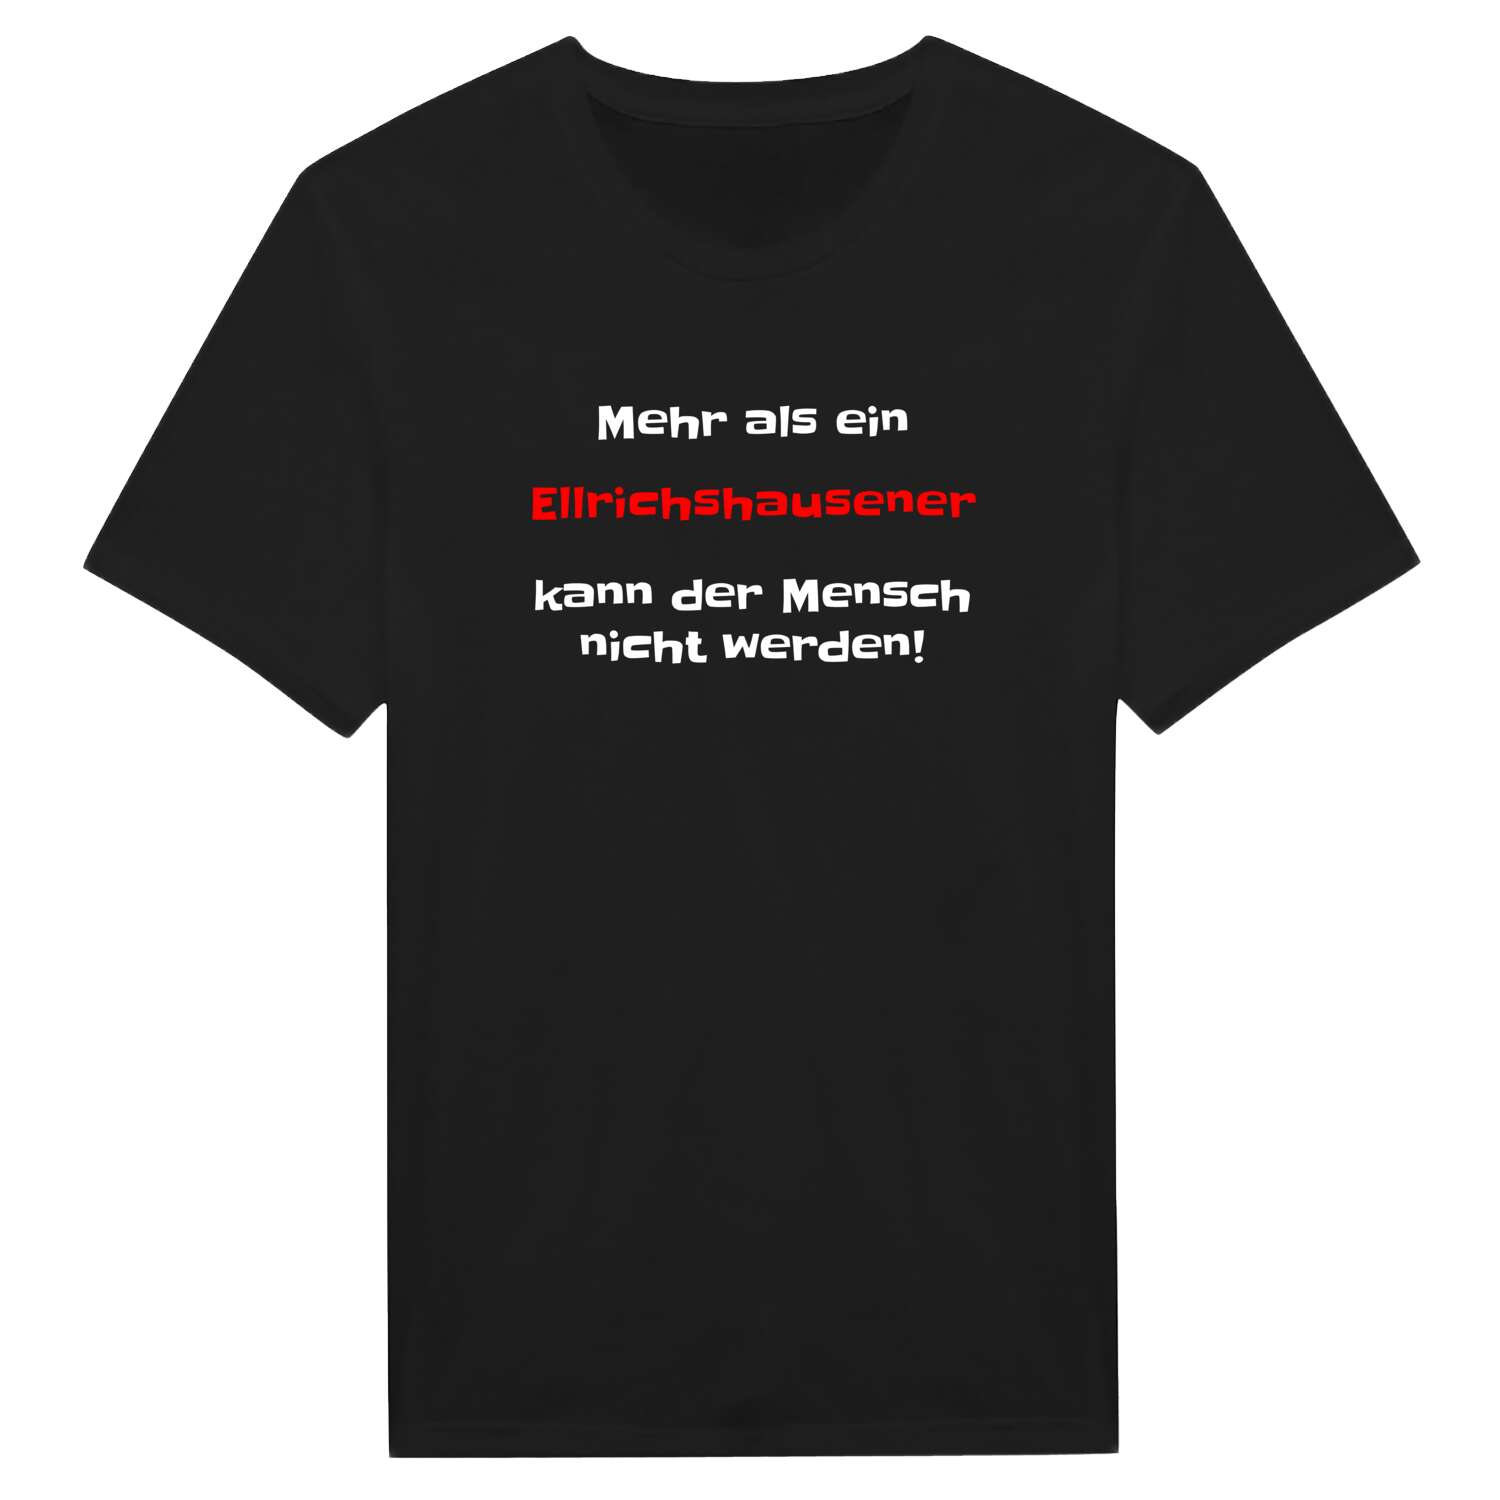 Ellrichshausen T-Shirt »Mehr als ein«